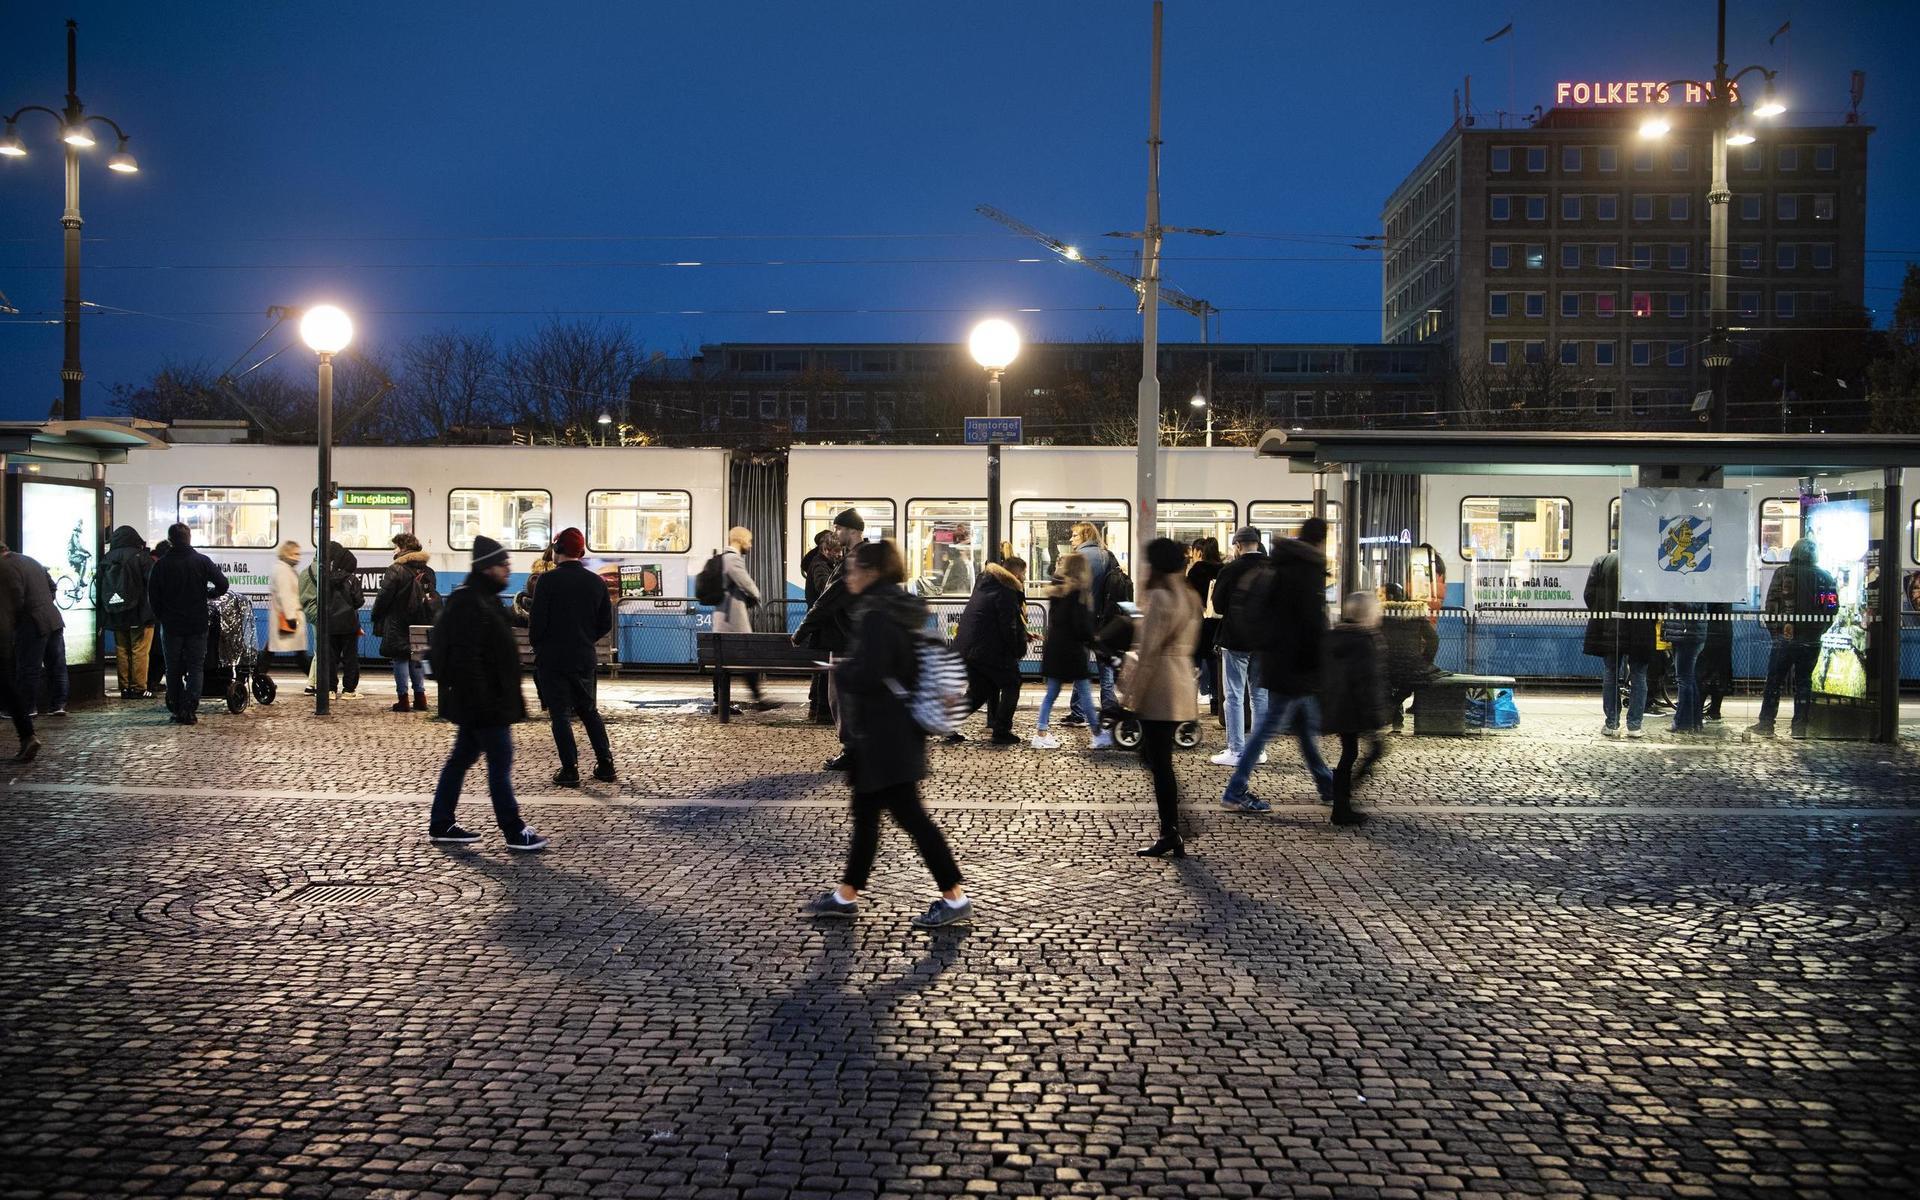 Järntorget, 30 okt, 17.04. Järntorget är en stark knutpunkt för spårvagnstrafiken i staden. Göteborgarna fortsätter ta spårvagnen hem från jobbet – trots uppmaningar att låta bli.